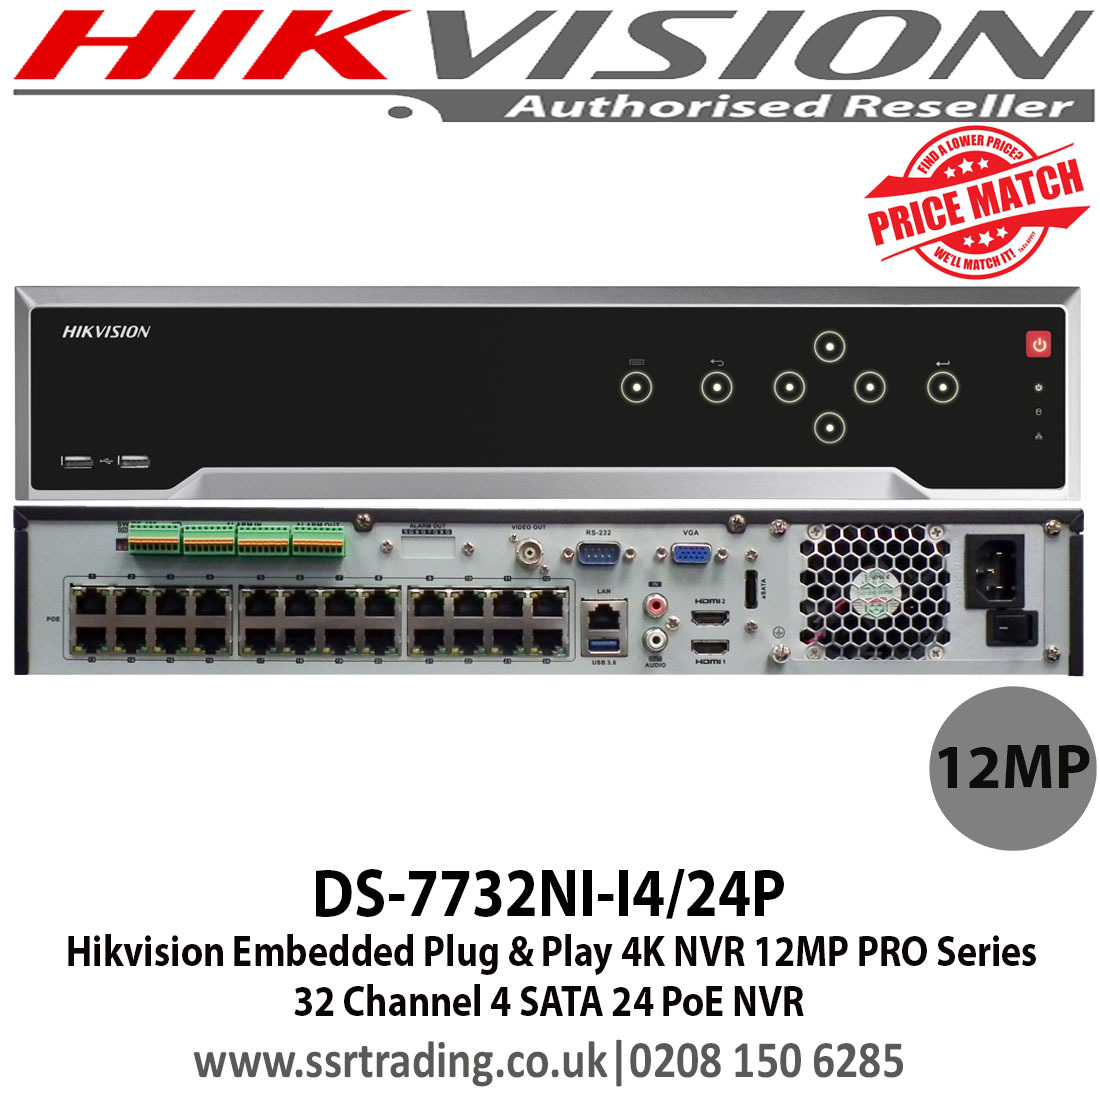 Ivms 4200 download hikvision